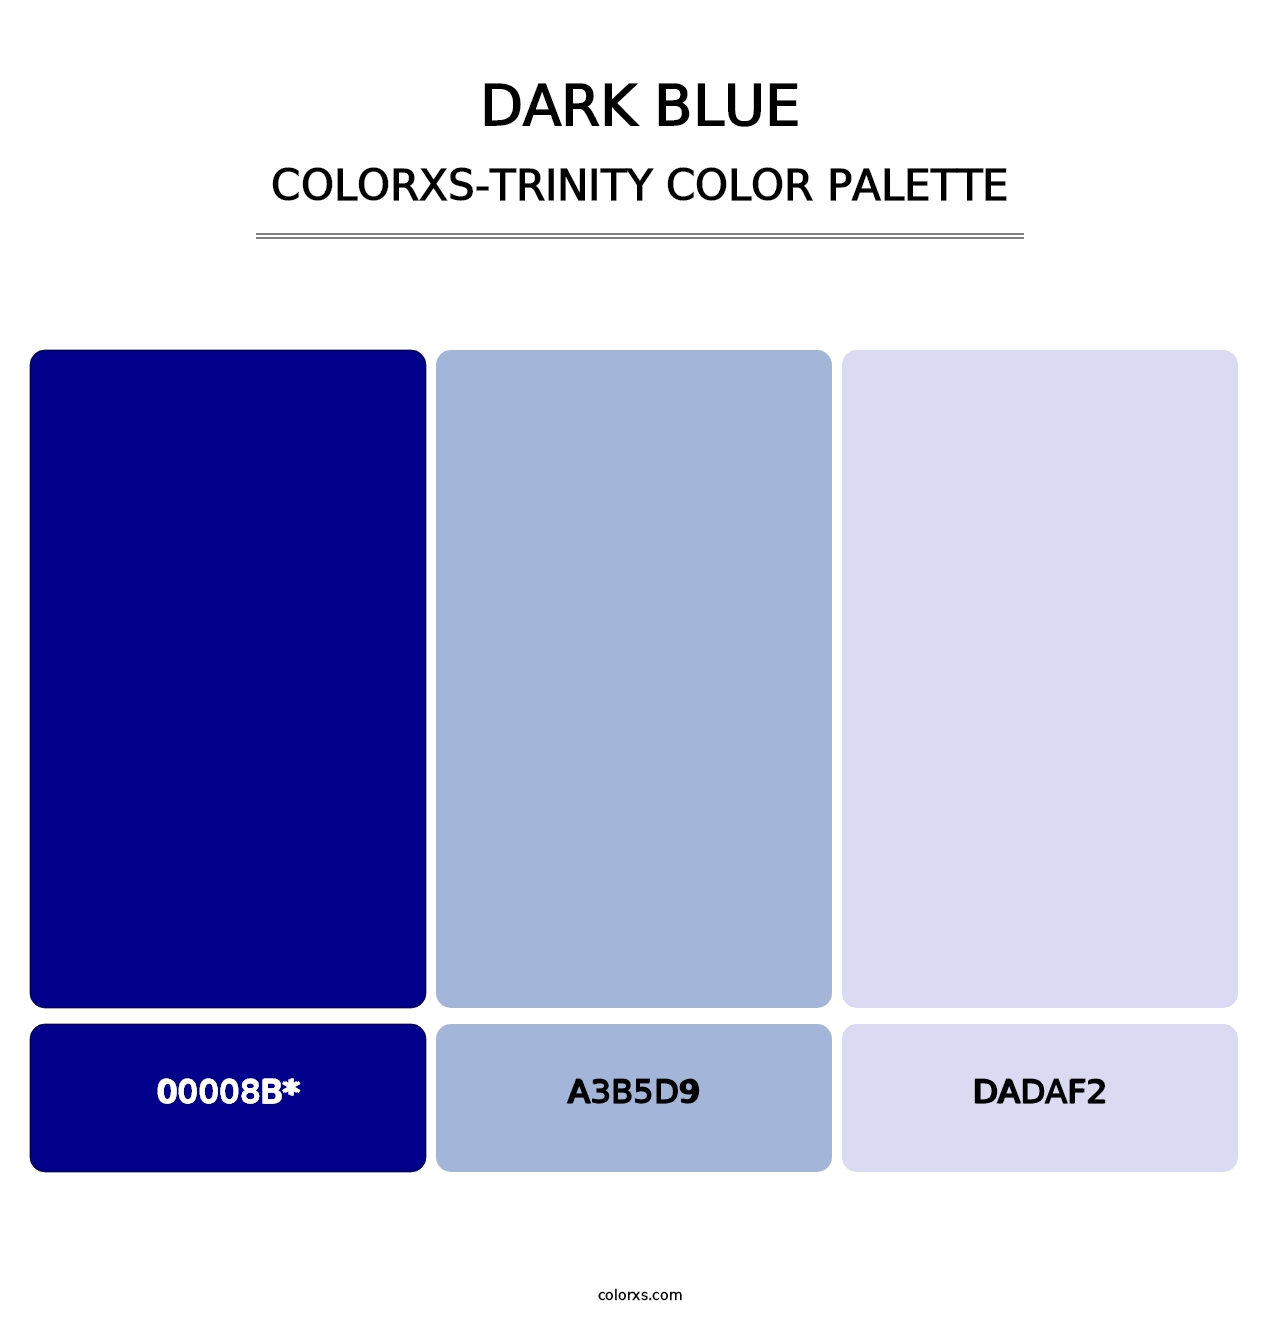 Dark Blue - Colorxs Trinity Palette